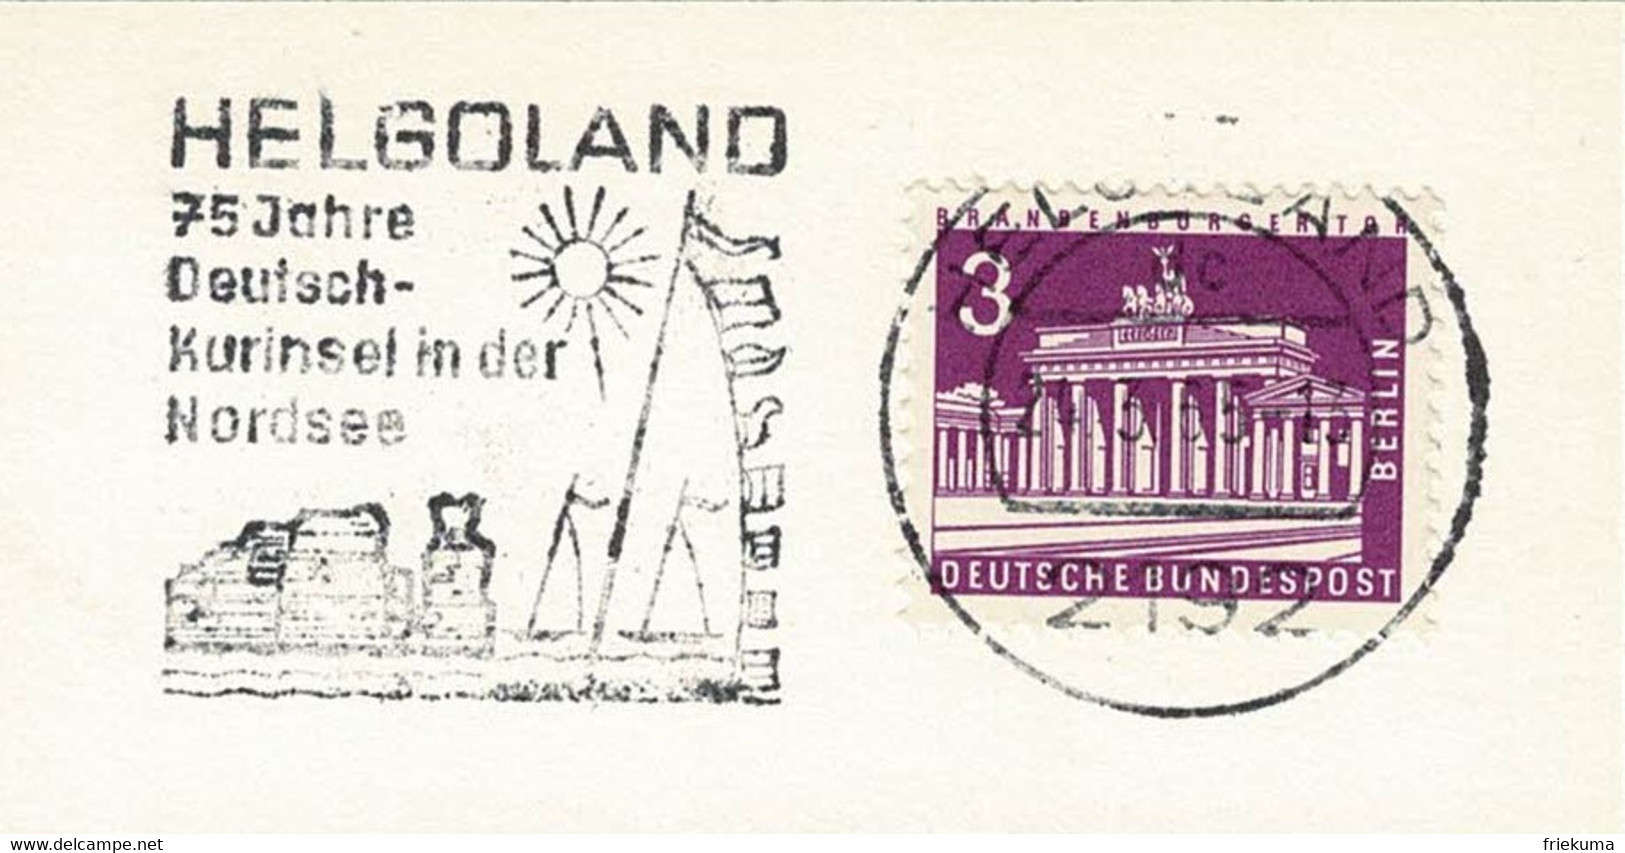 Deutsche Bundespost 1965, Flaggenstempel Helgoland, Kurinsel, Nordsee - Iles